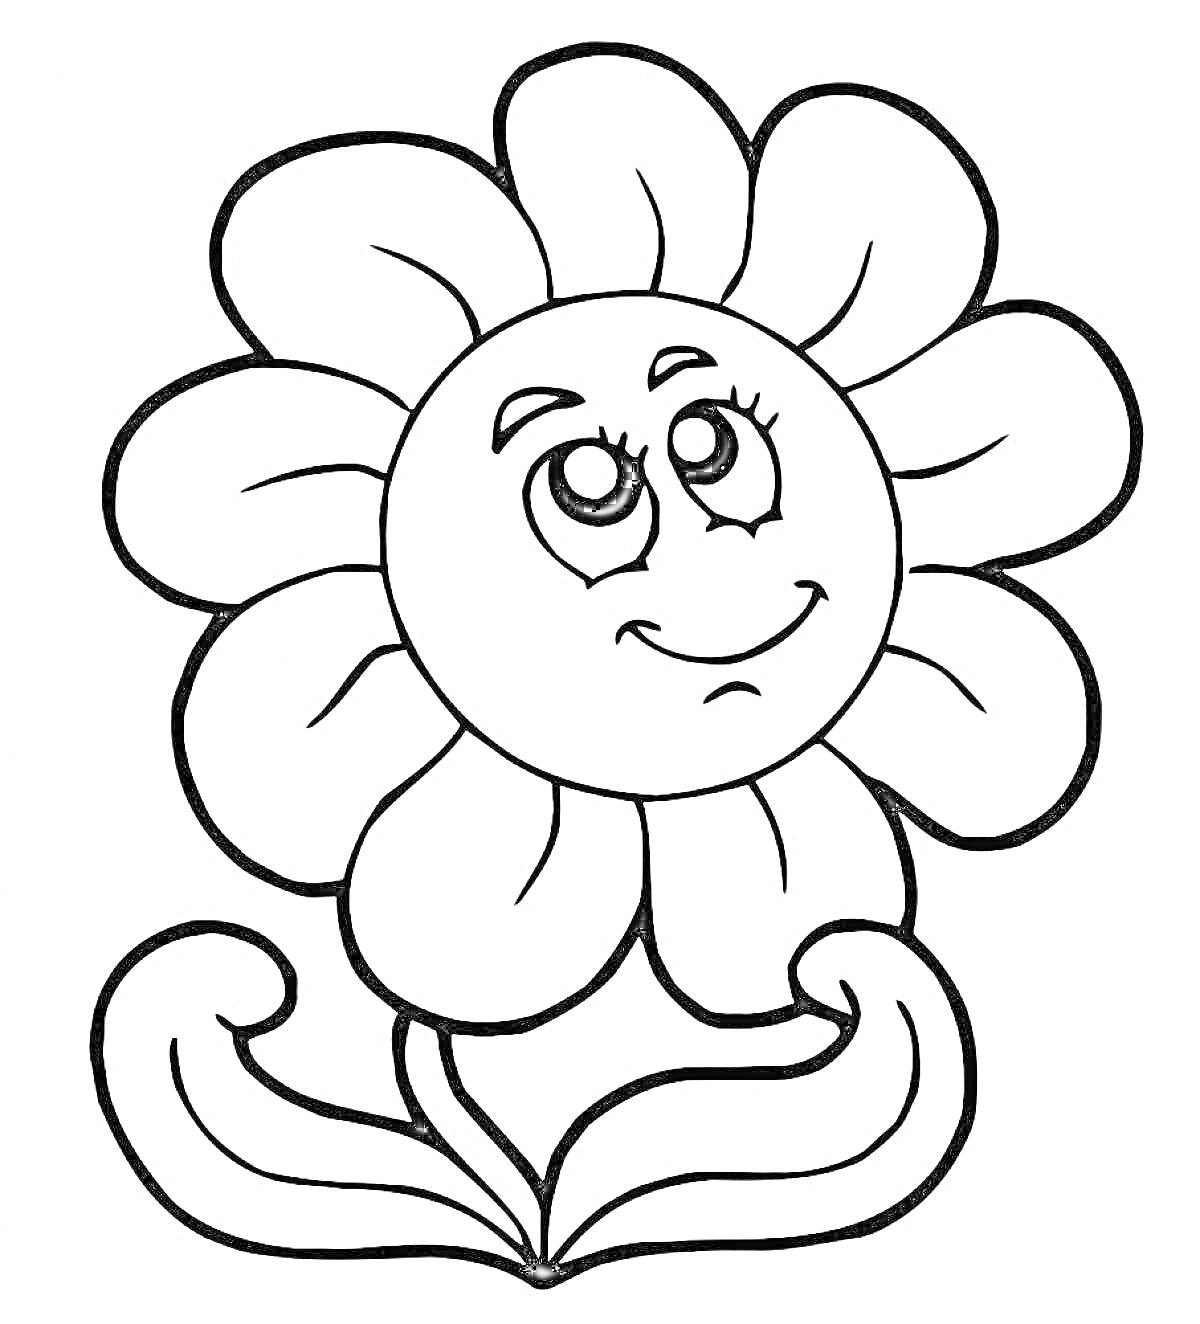 Цветик семицветик с улыбающимся лицом и двумя листьями